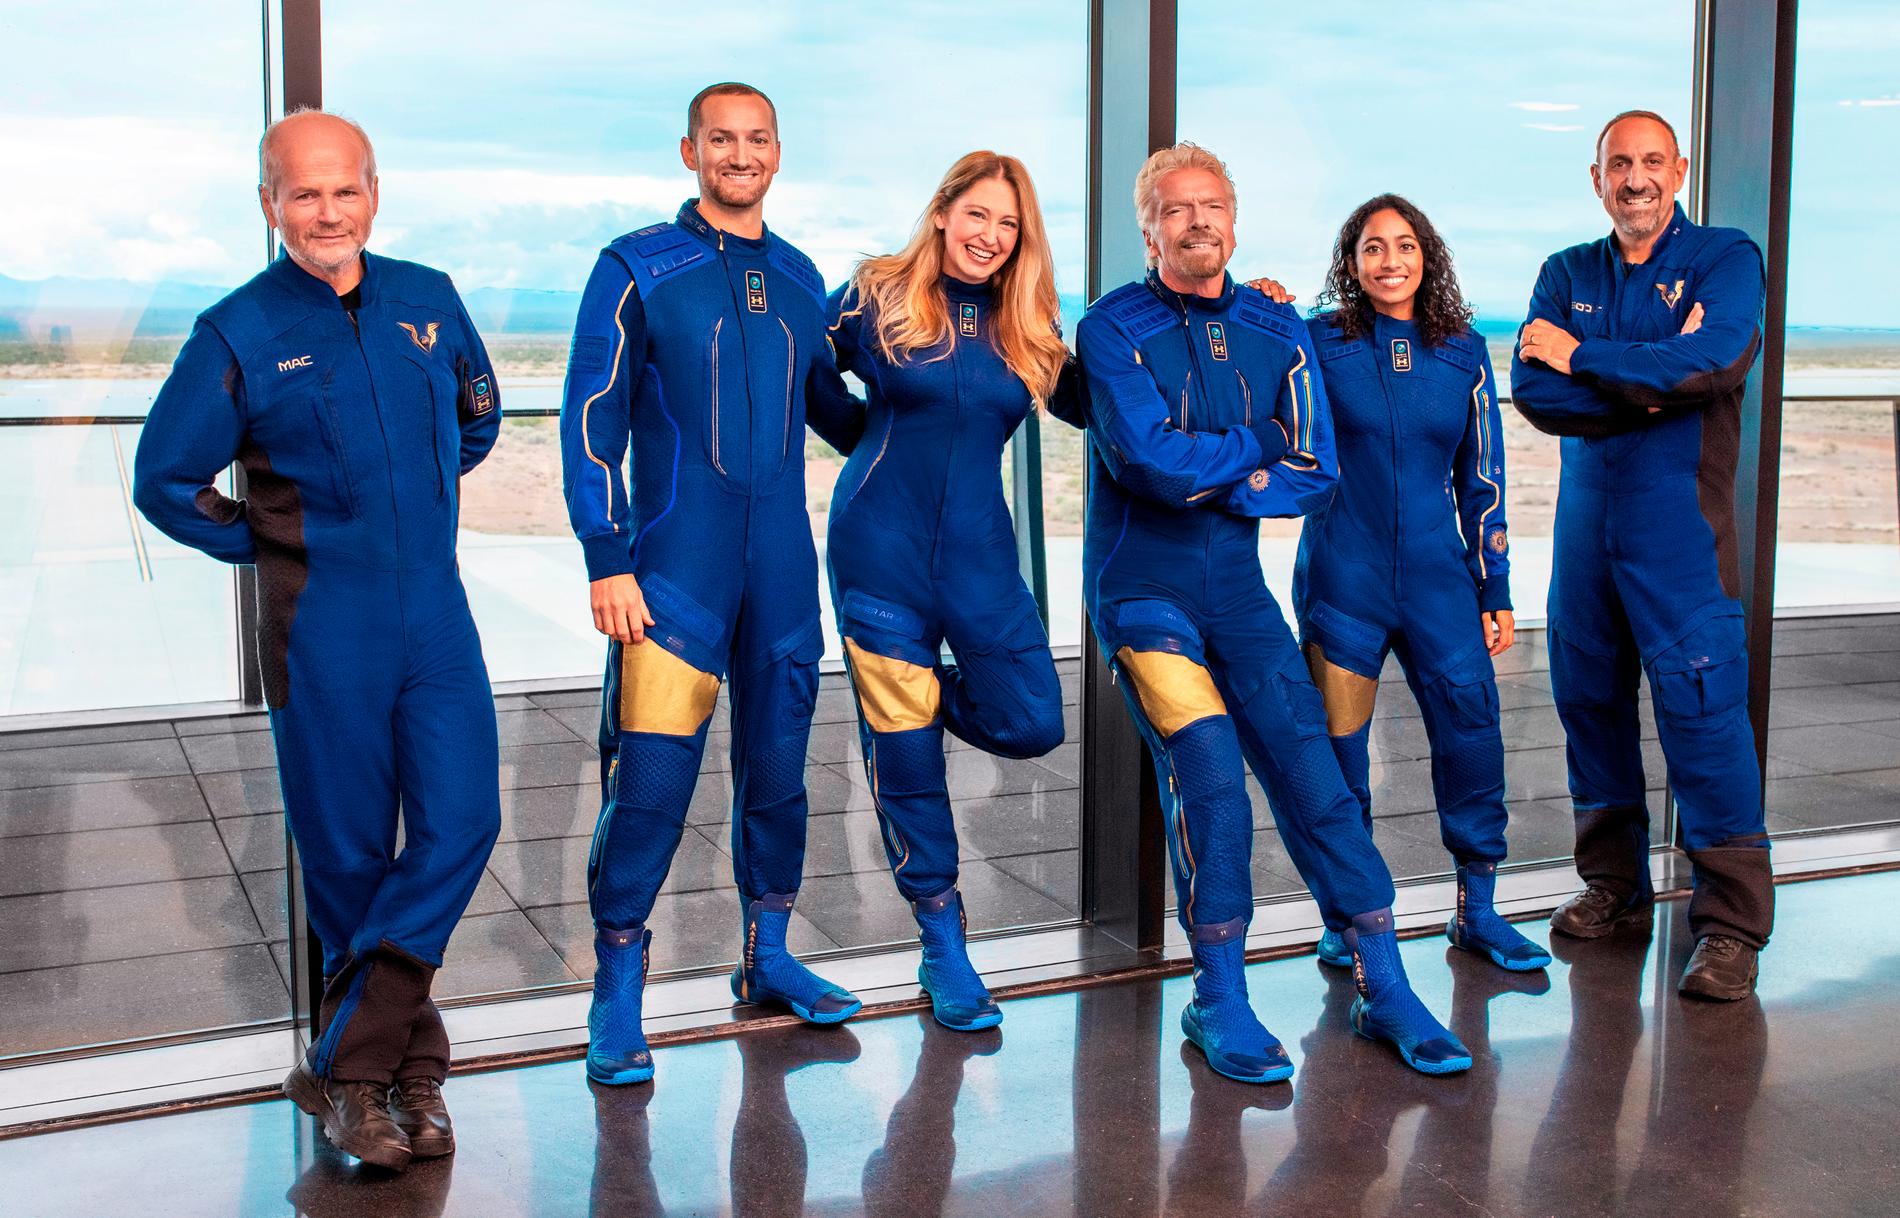 De här sex personerna kommer att vara med på Virgin Galactics testflygning, som är planerad till den 11 juli. Grundaren Richard Branson är tredje personen från höger.